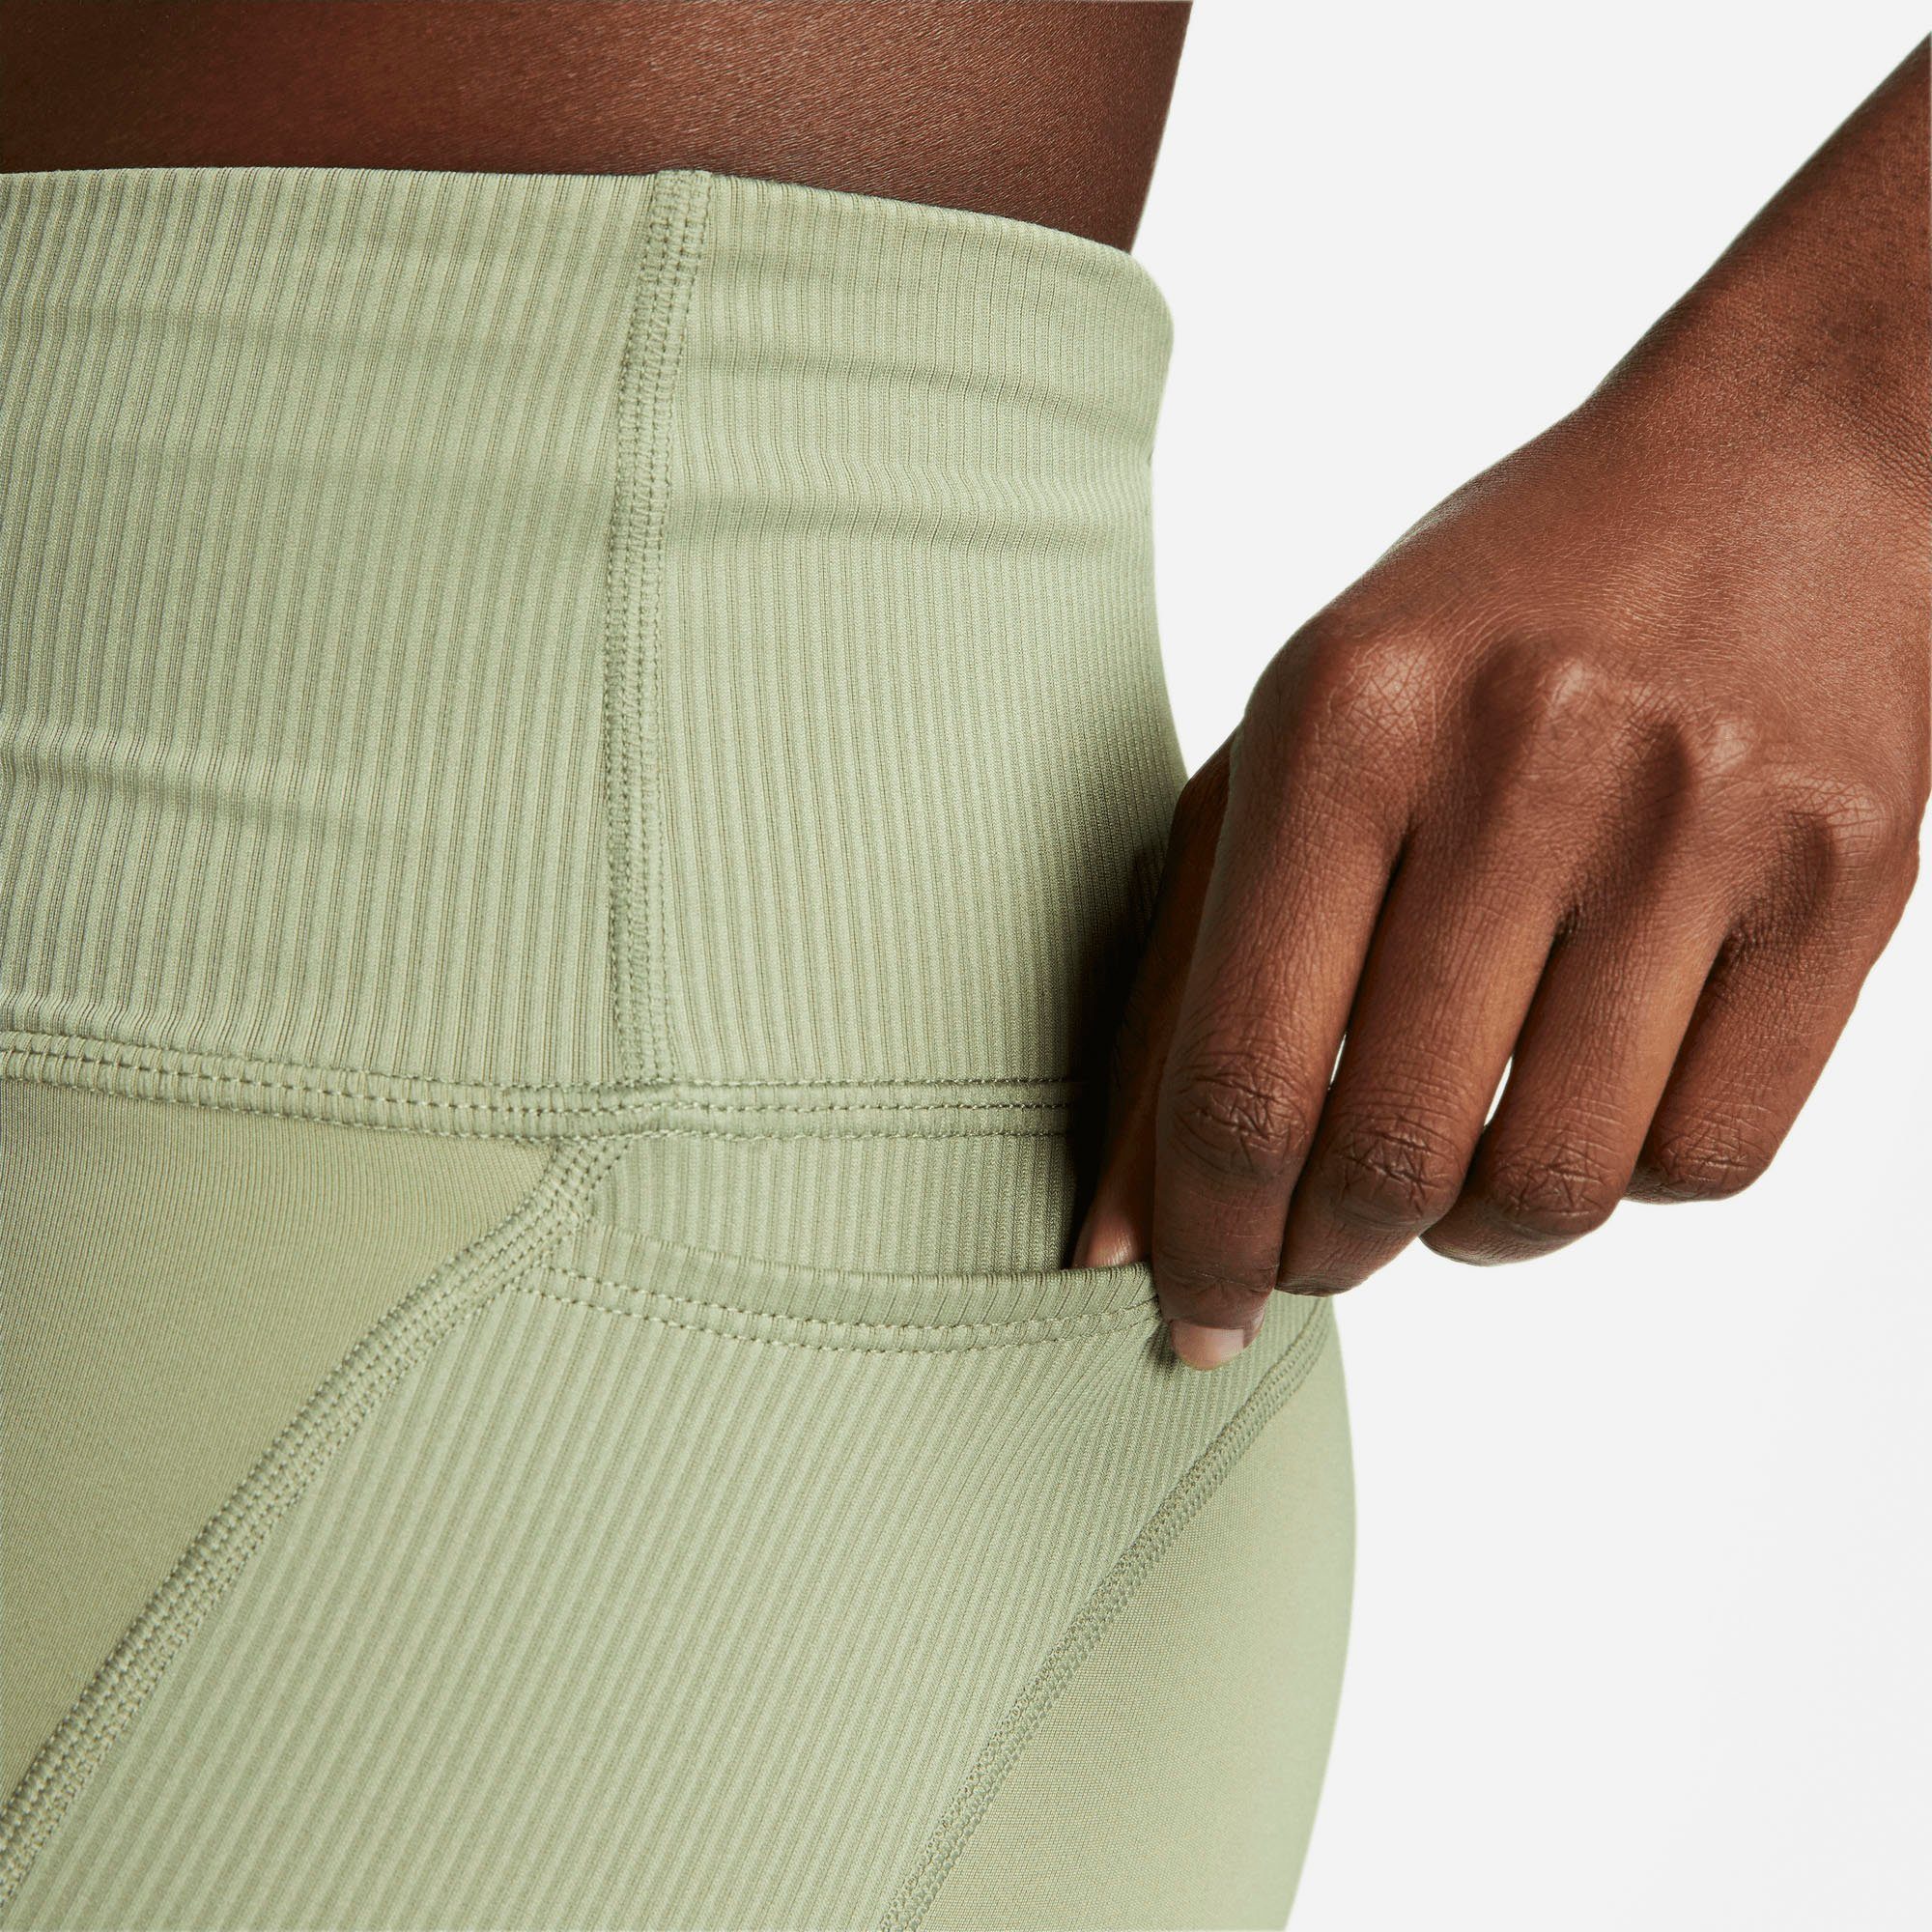 Lauftights grün Women's Dri-FIT Shorts Nike